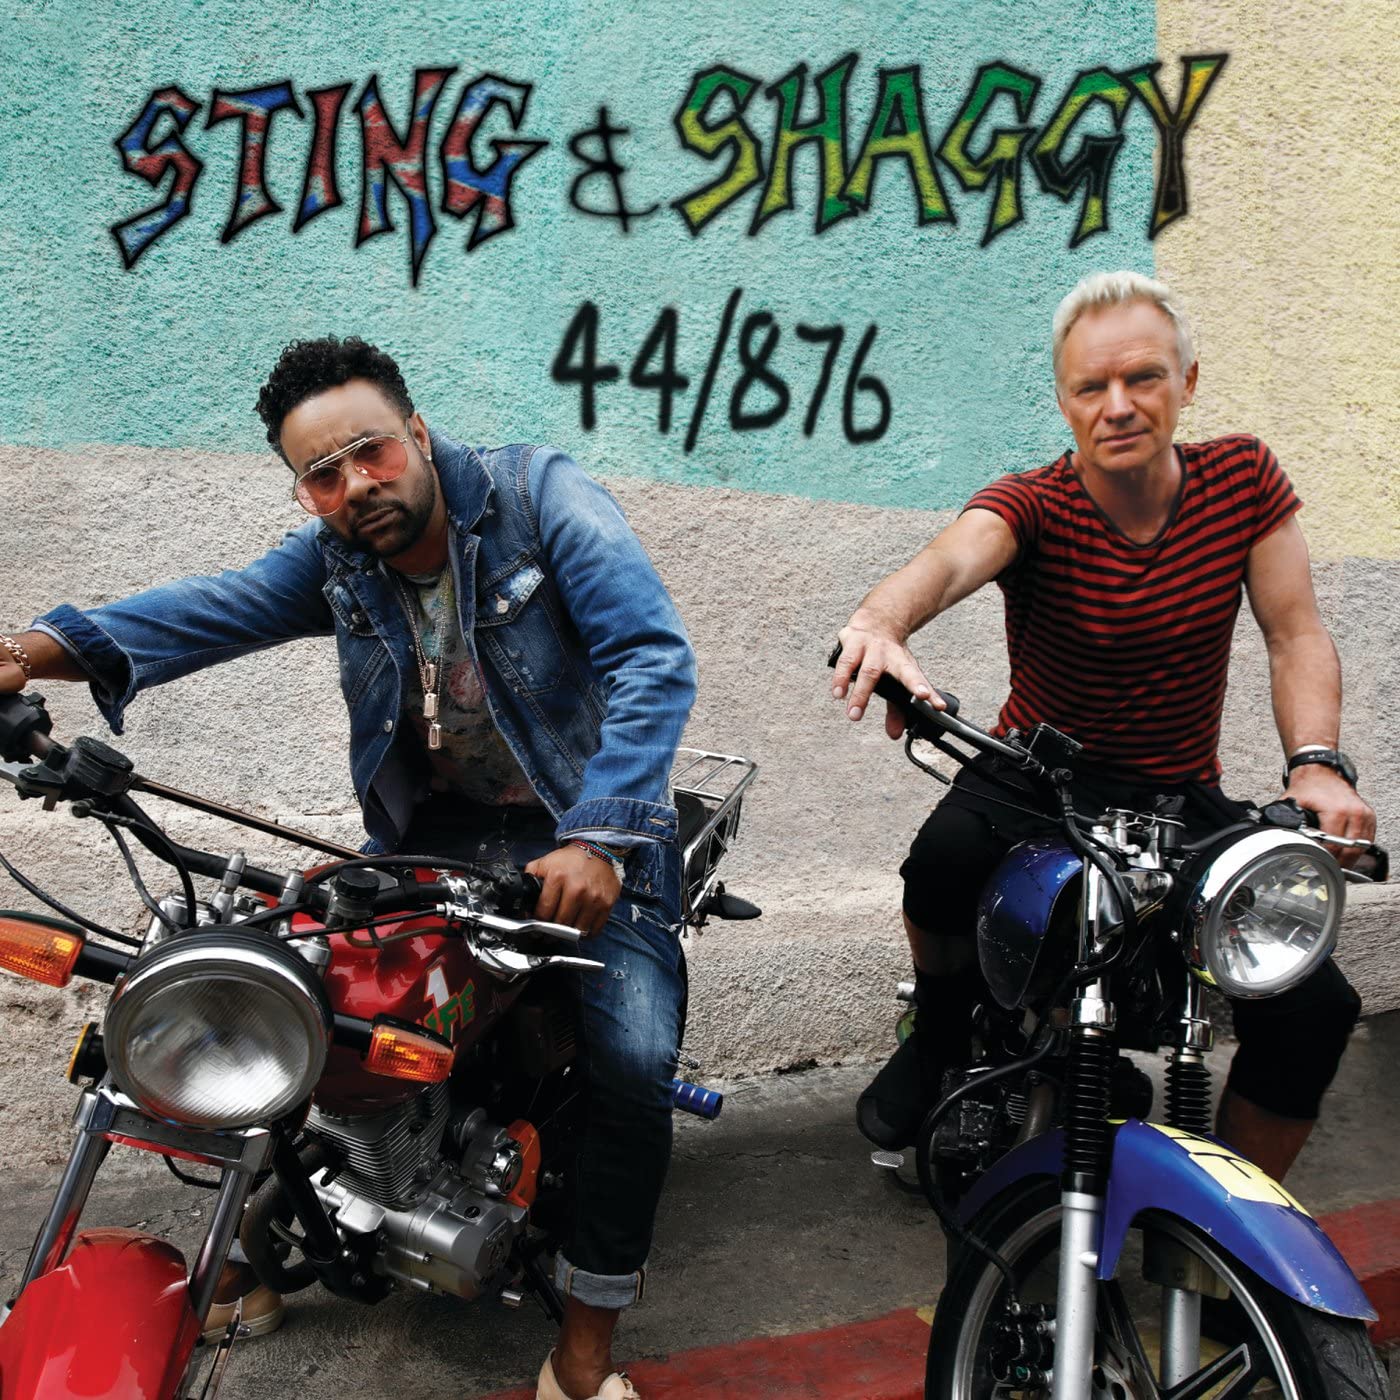 Sting & Shaggy 44/876 LTD - Ireland Vinyl